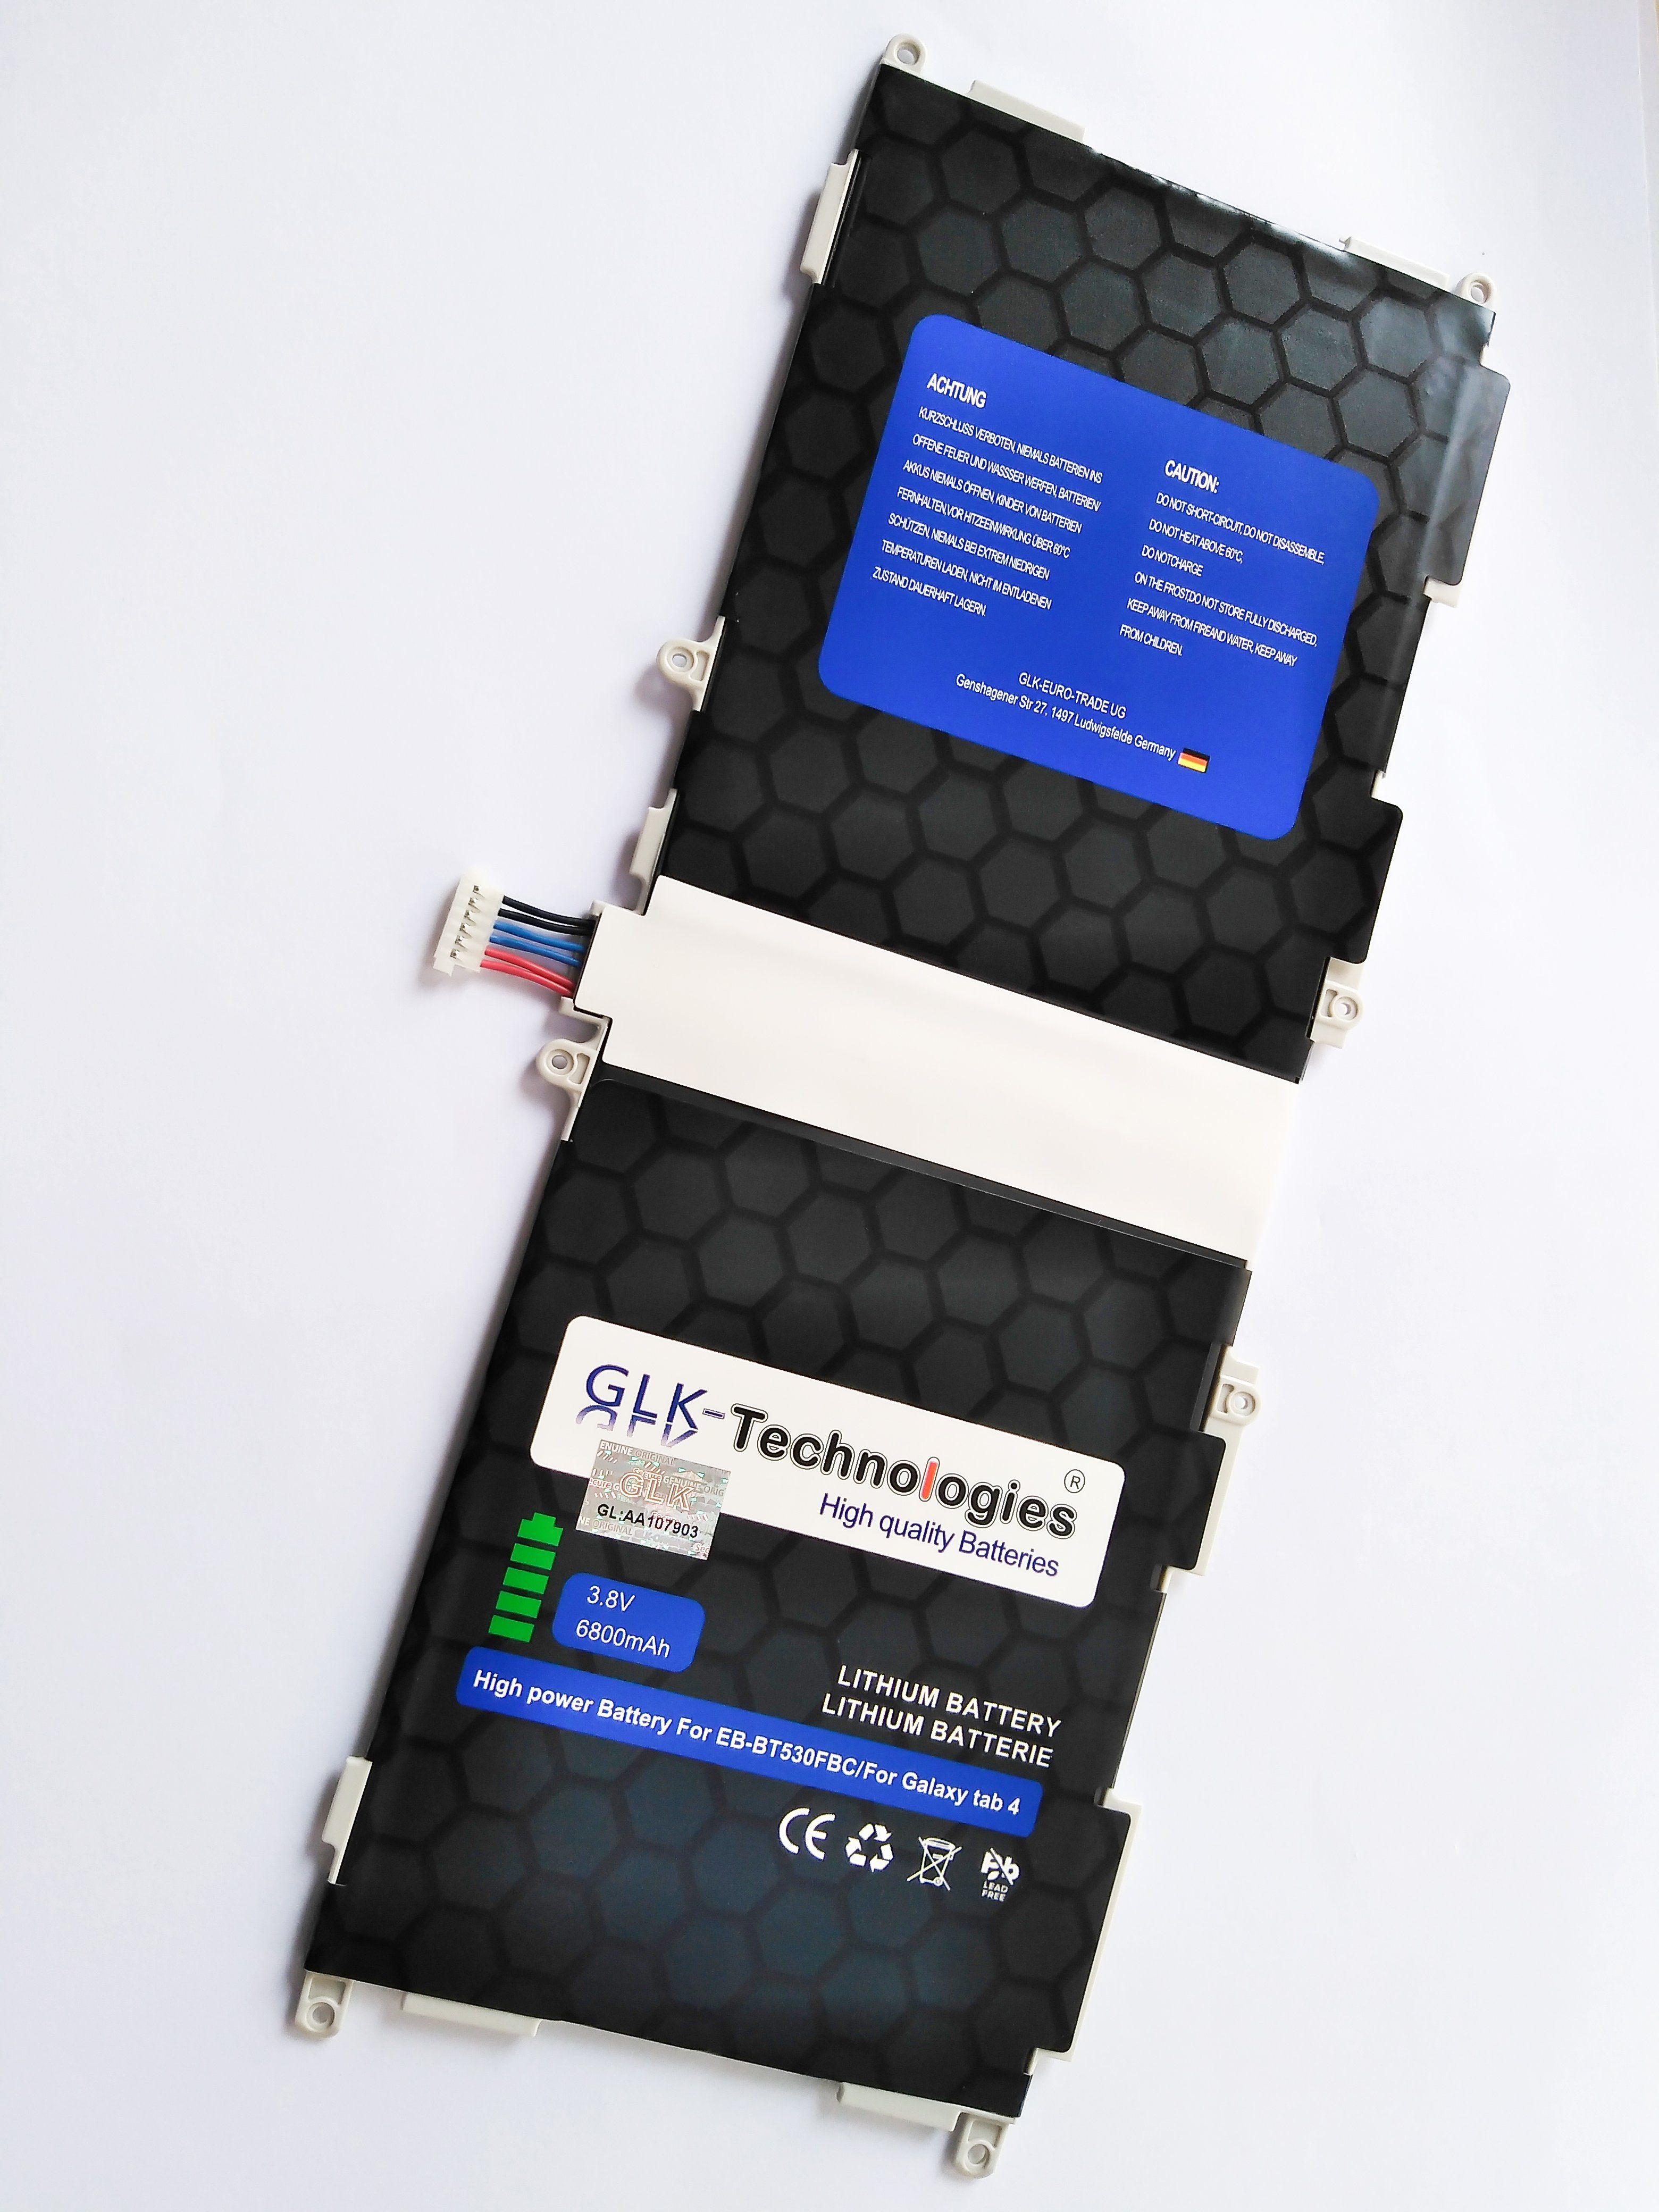 T530 GLK Galaxy akku 10.1 T535, Tablet-Akku V) SM-T530NU Werkzeug für Samsung (3.8 tab 4 GLK-Technologies 6800 mAh